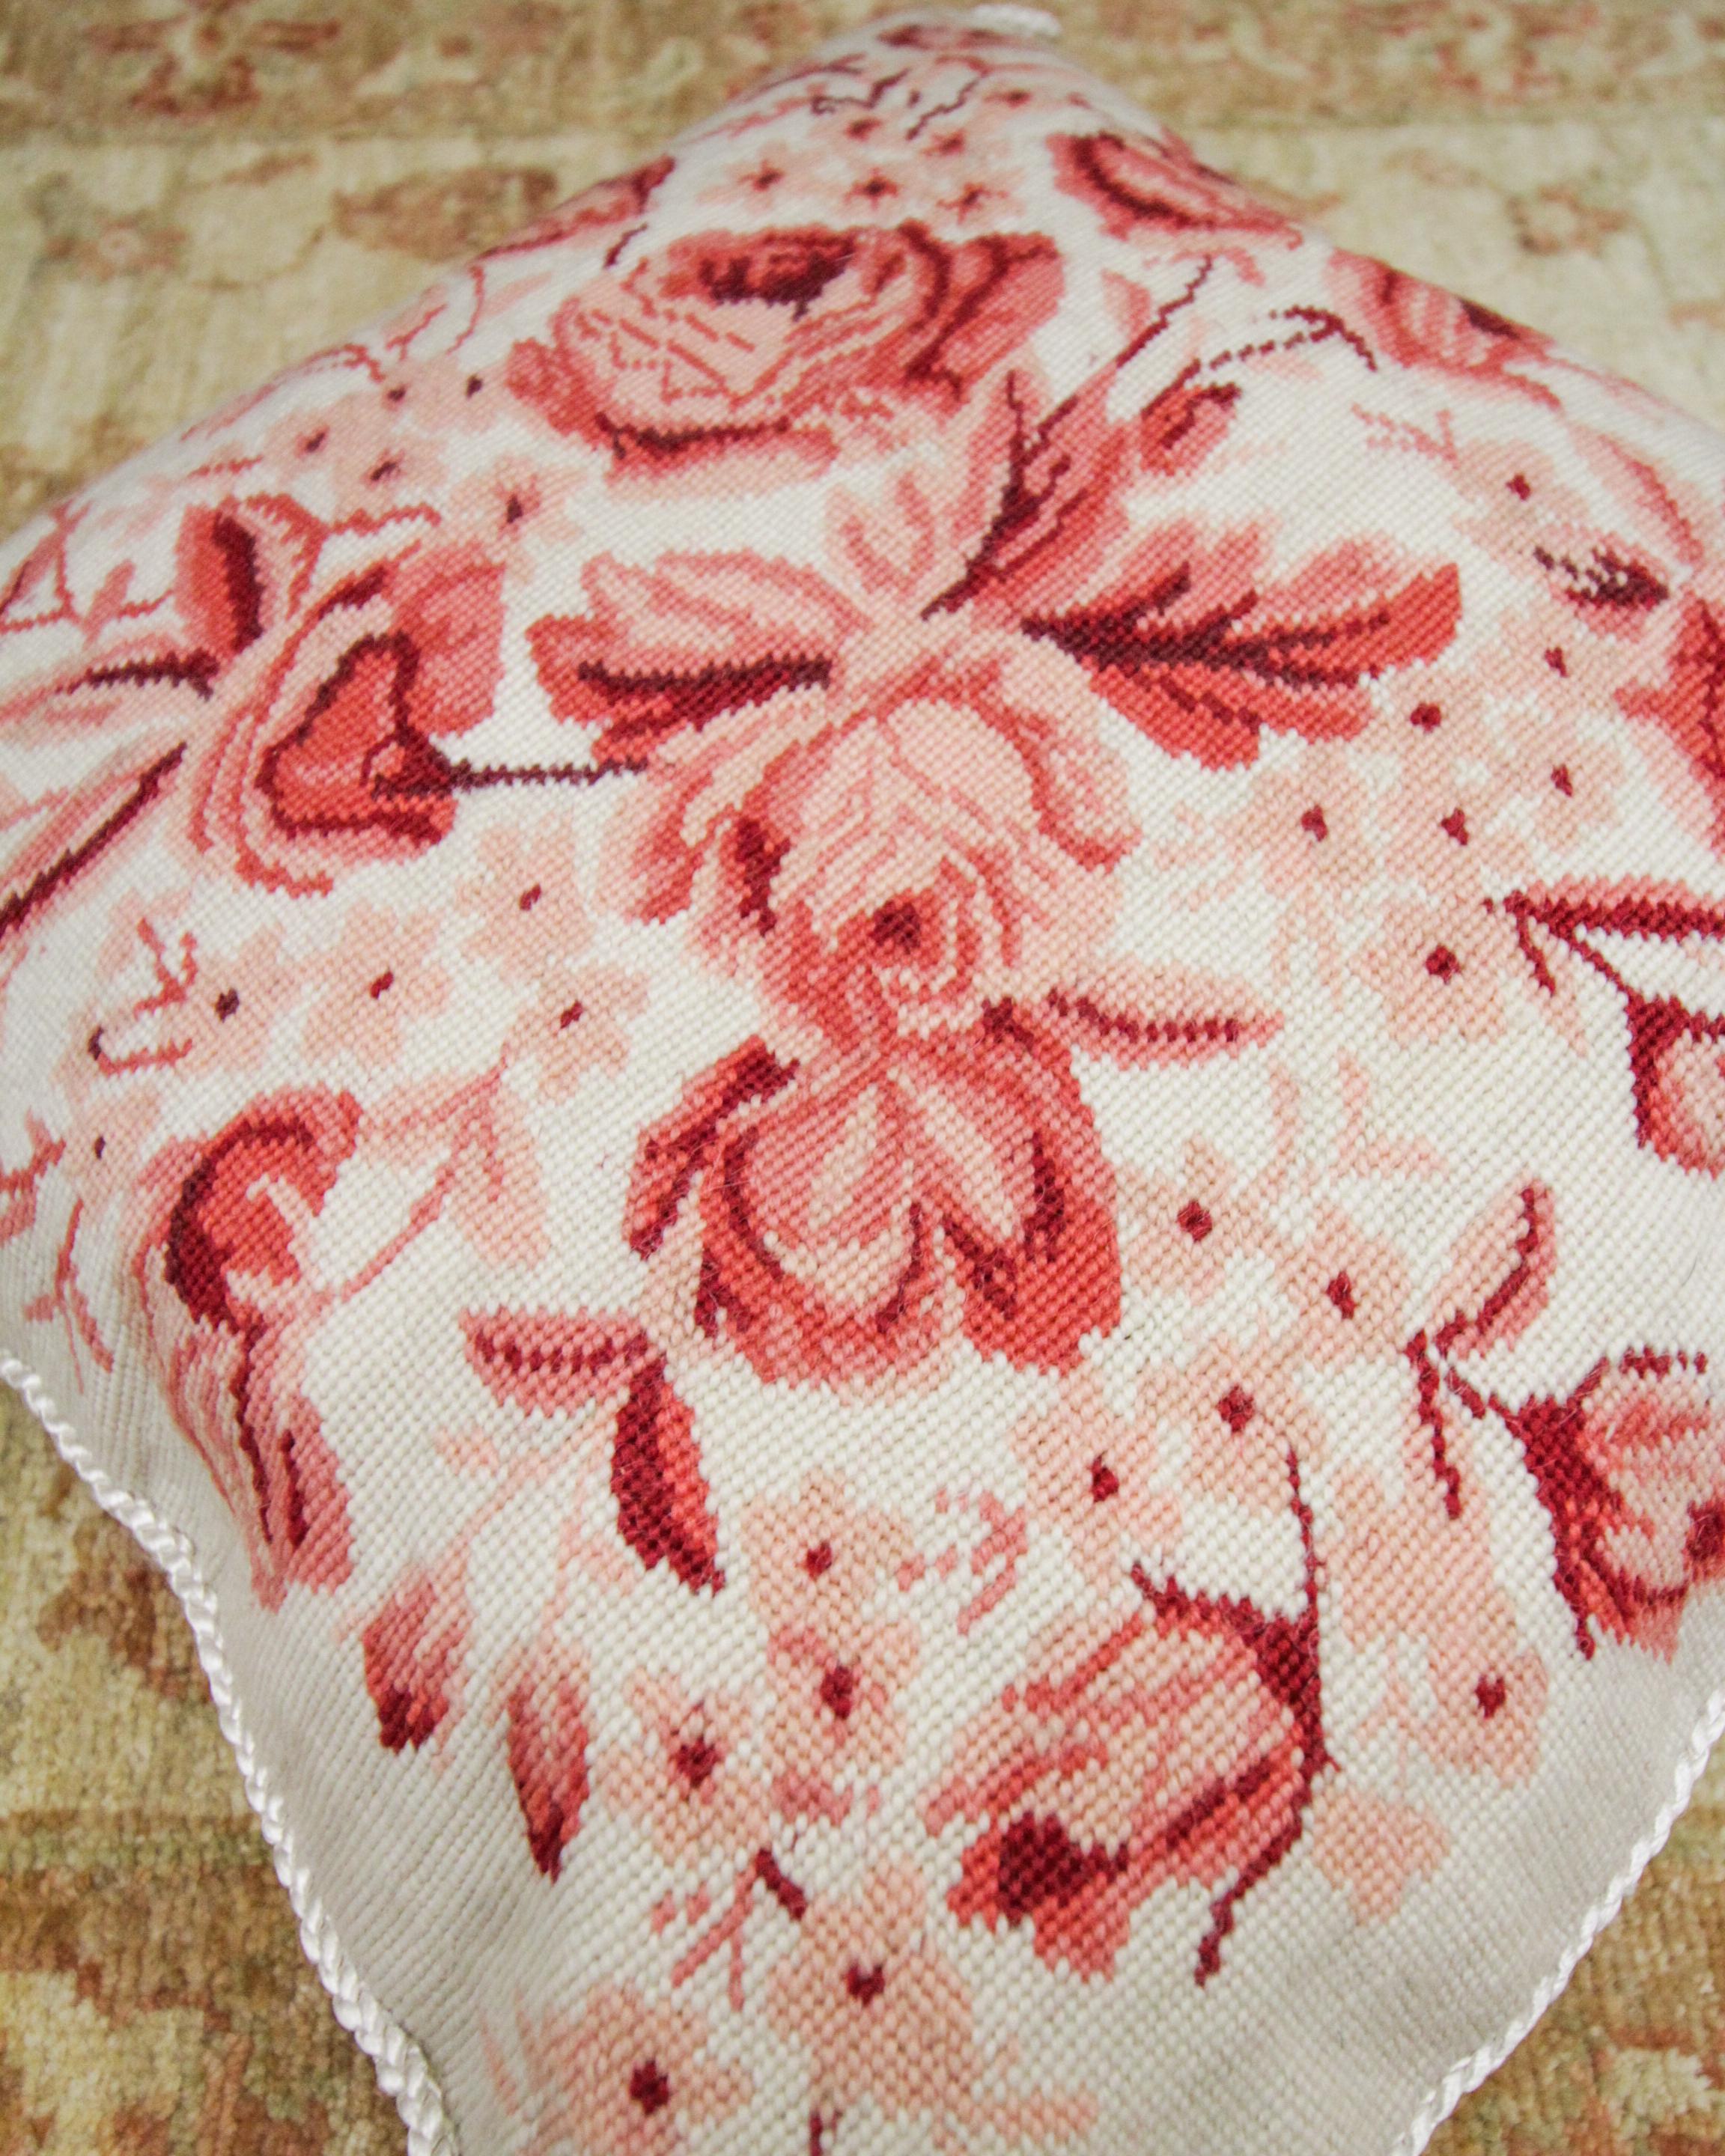 Dieser florale Kissenbezug mit Handstickerei ist ein hervorragendes Beispiel für alte Kissenbezüge, die in den 1990er Jahren gewebt wurden. Das florale Muster wurde in satten Rot- und Rosatönen auf einem dezenten cremefarbenen Hintergrund gewebt und